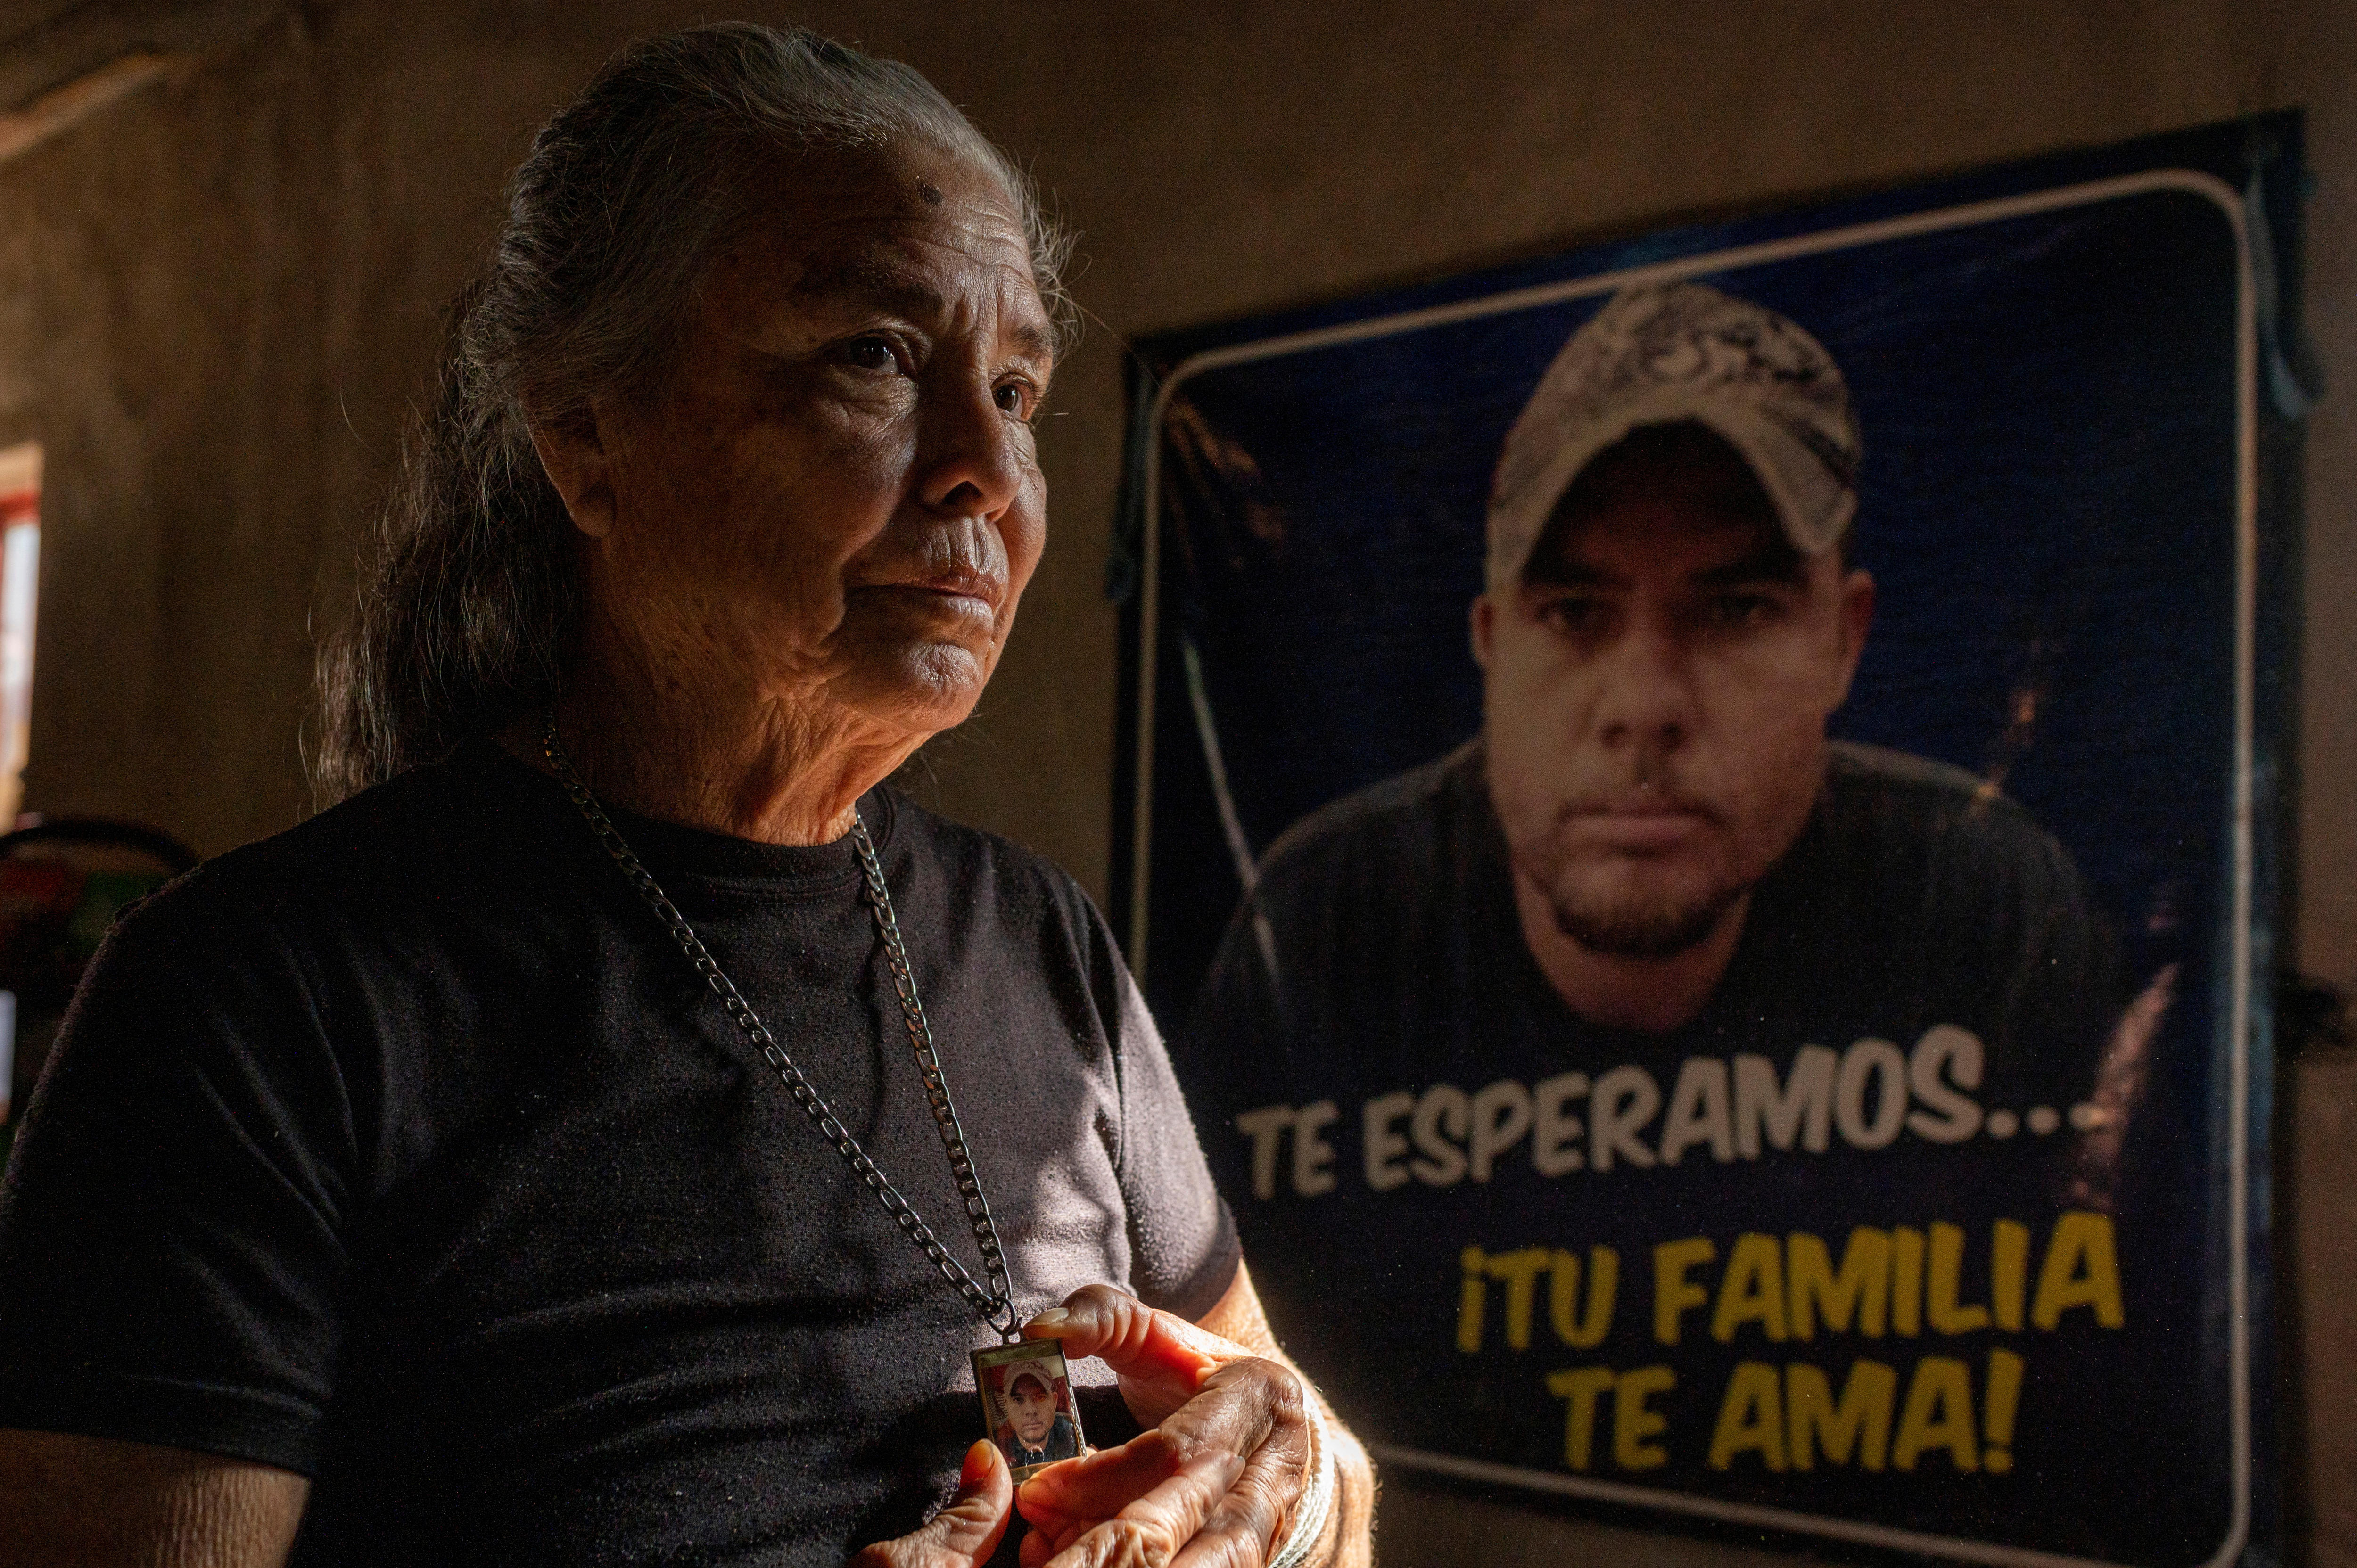 墨西哥母亲寻找失踪儿子的照片